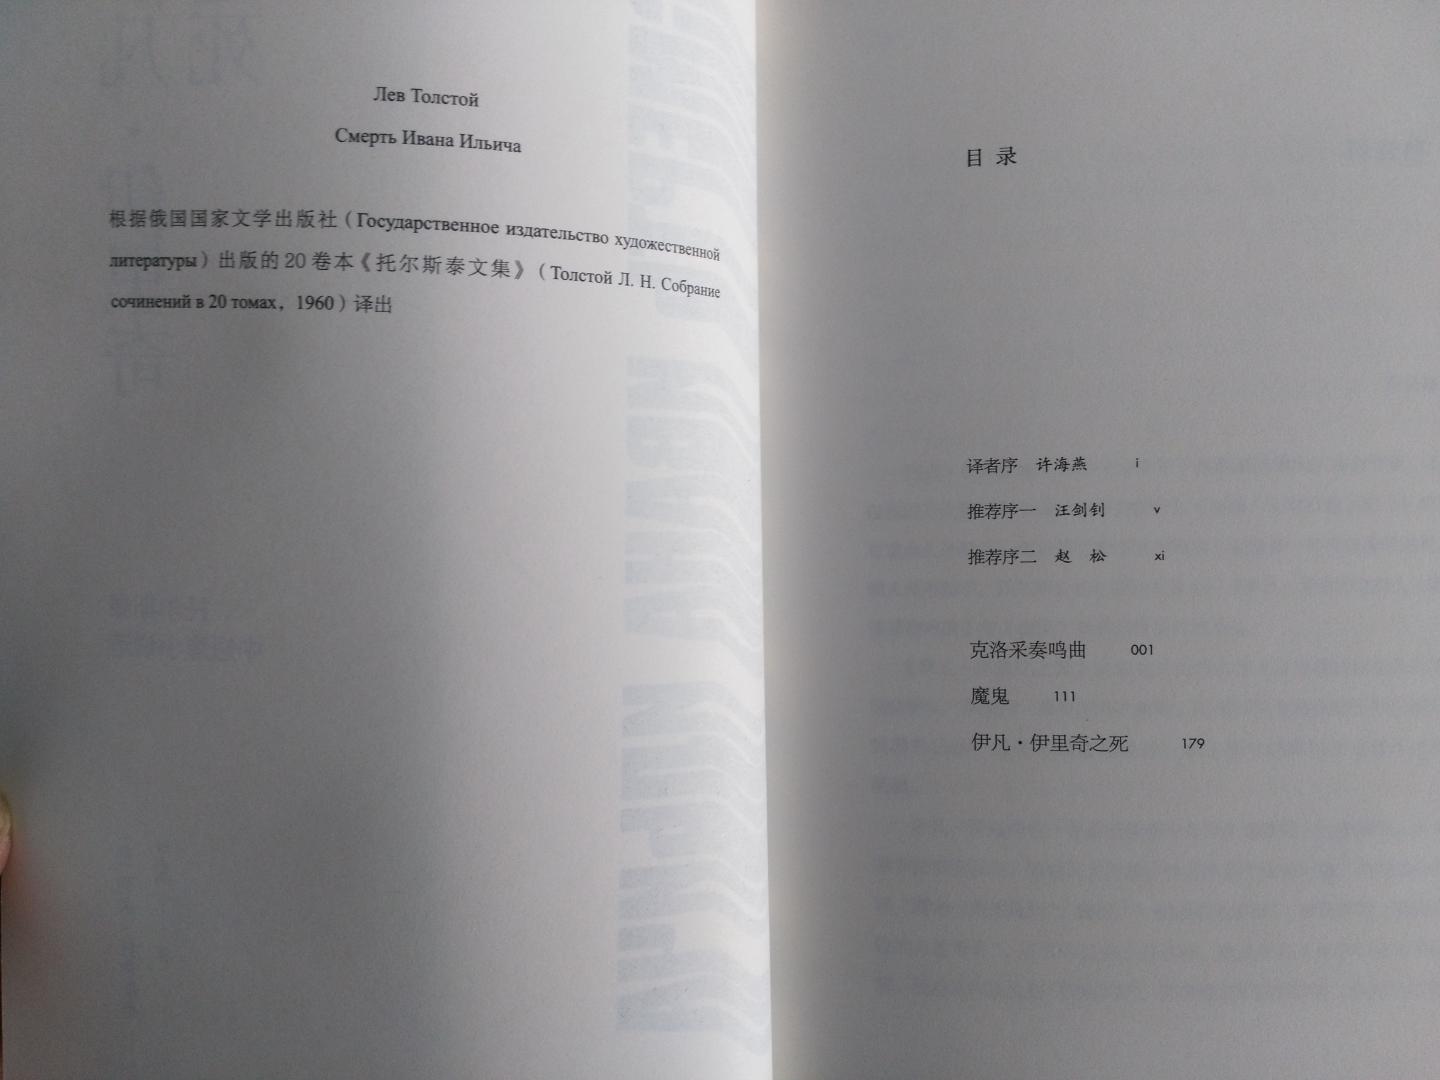 2017年10月1版1刷，东方出版社，徐海燕翻译，装订和设计都还不错，托大师的中短篇，以前没看过，这会有幸赏析下。